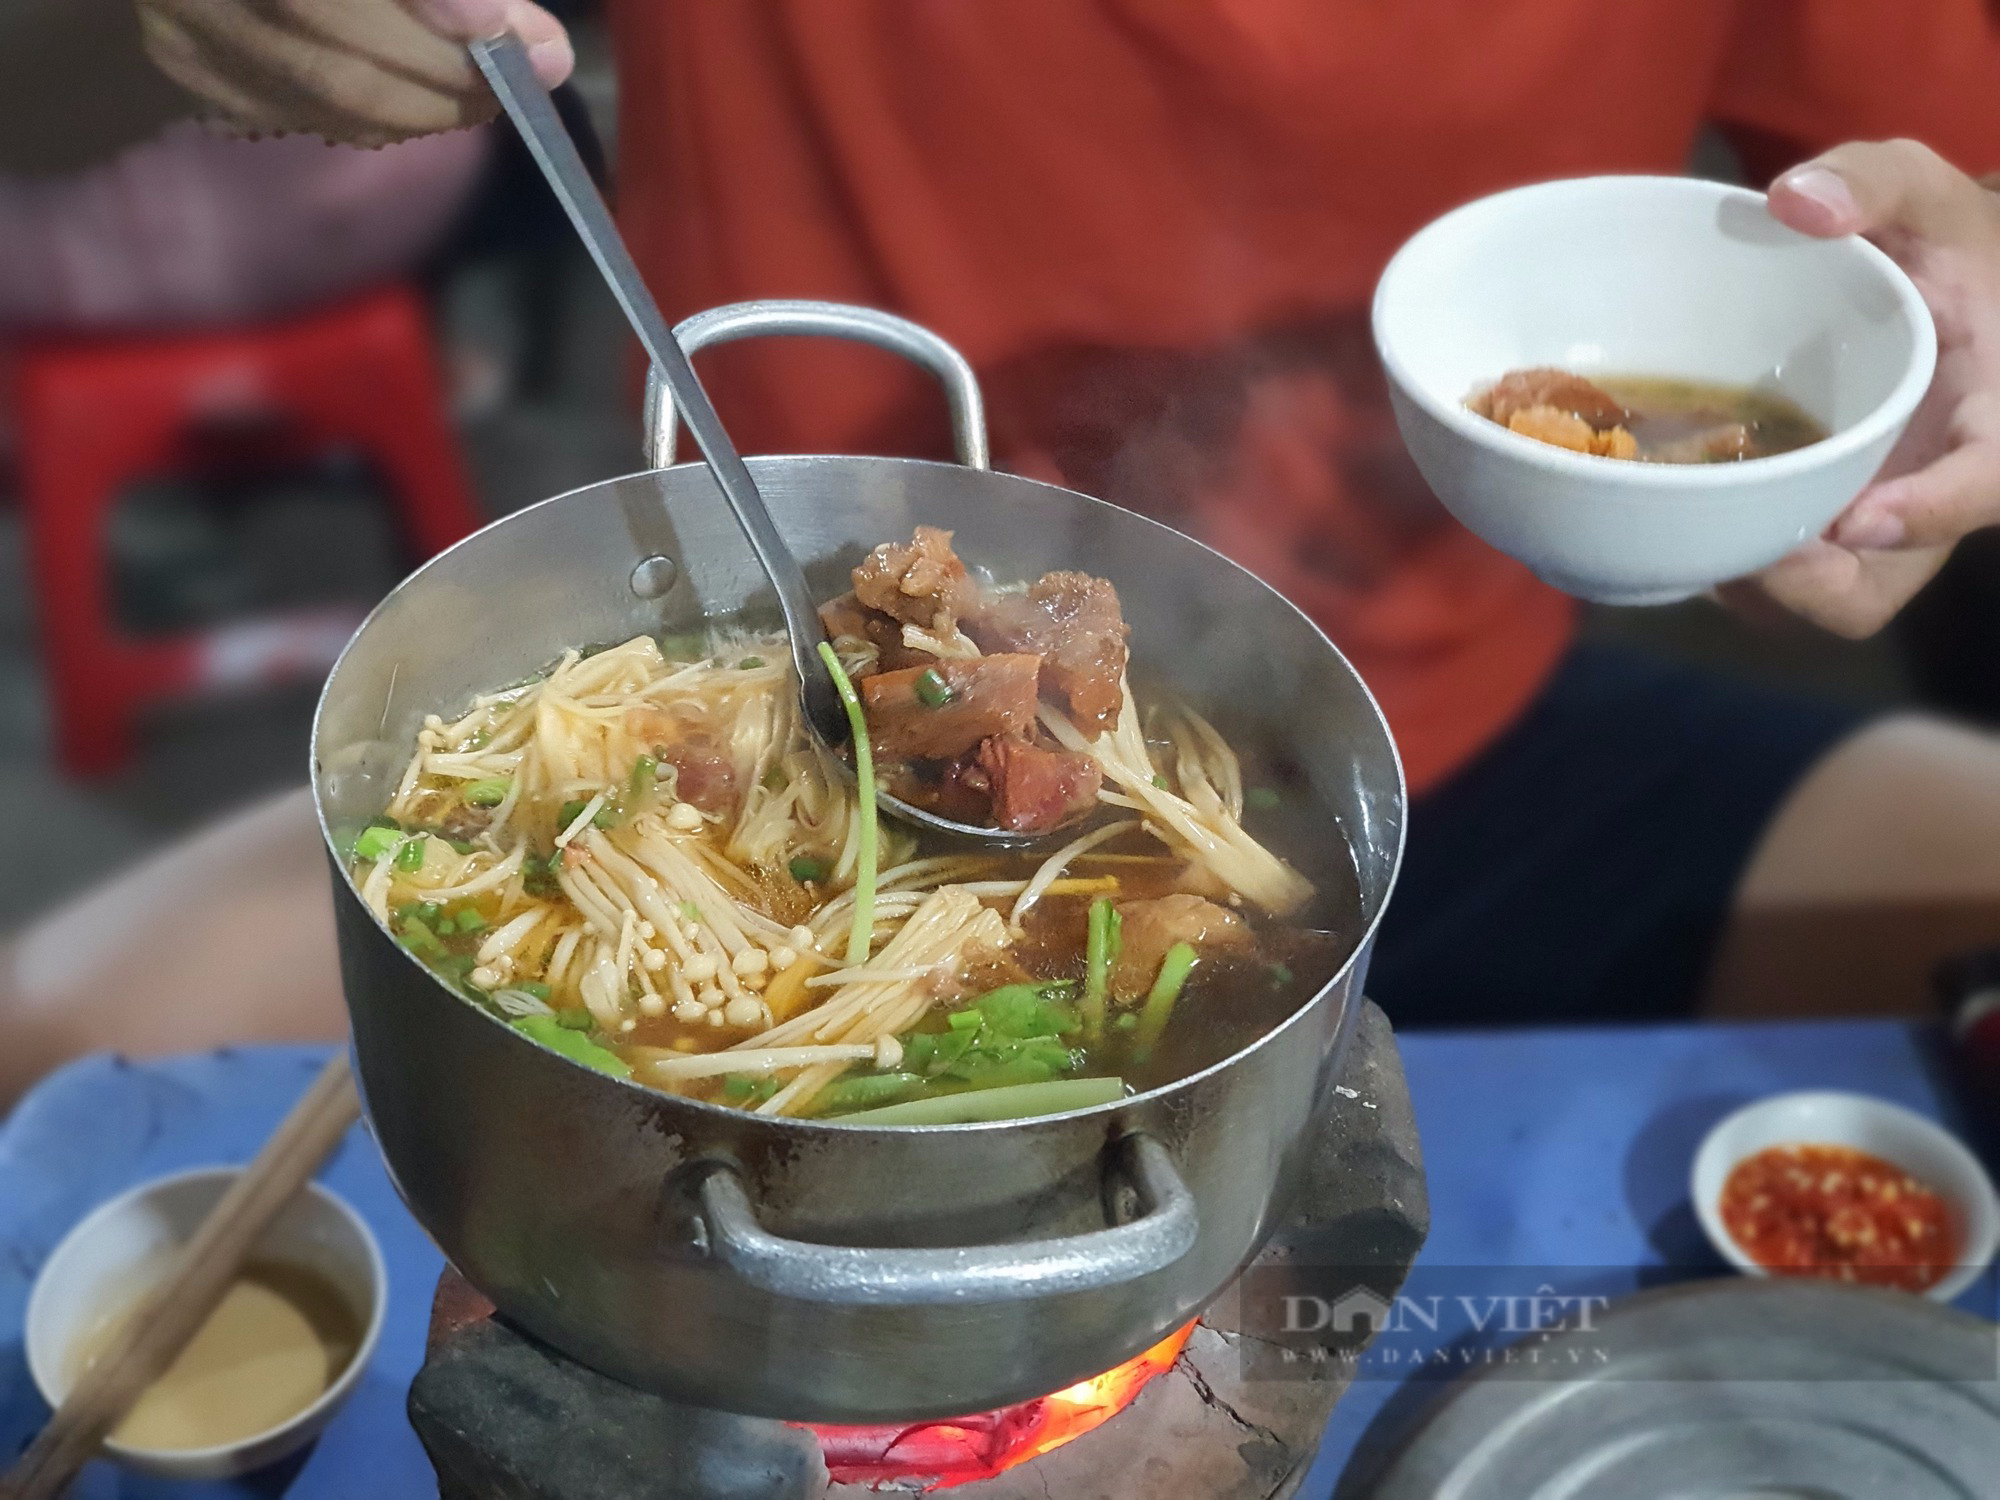 Sài Gòn quán: Lẩu bò kho Campuchia trên bếp than hồng, hương vị độc lạ khu Vườn Chuối-1